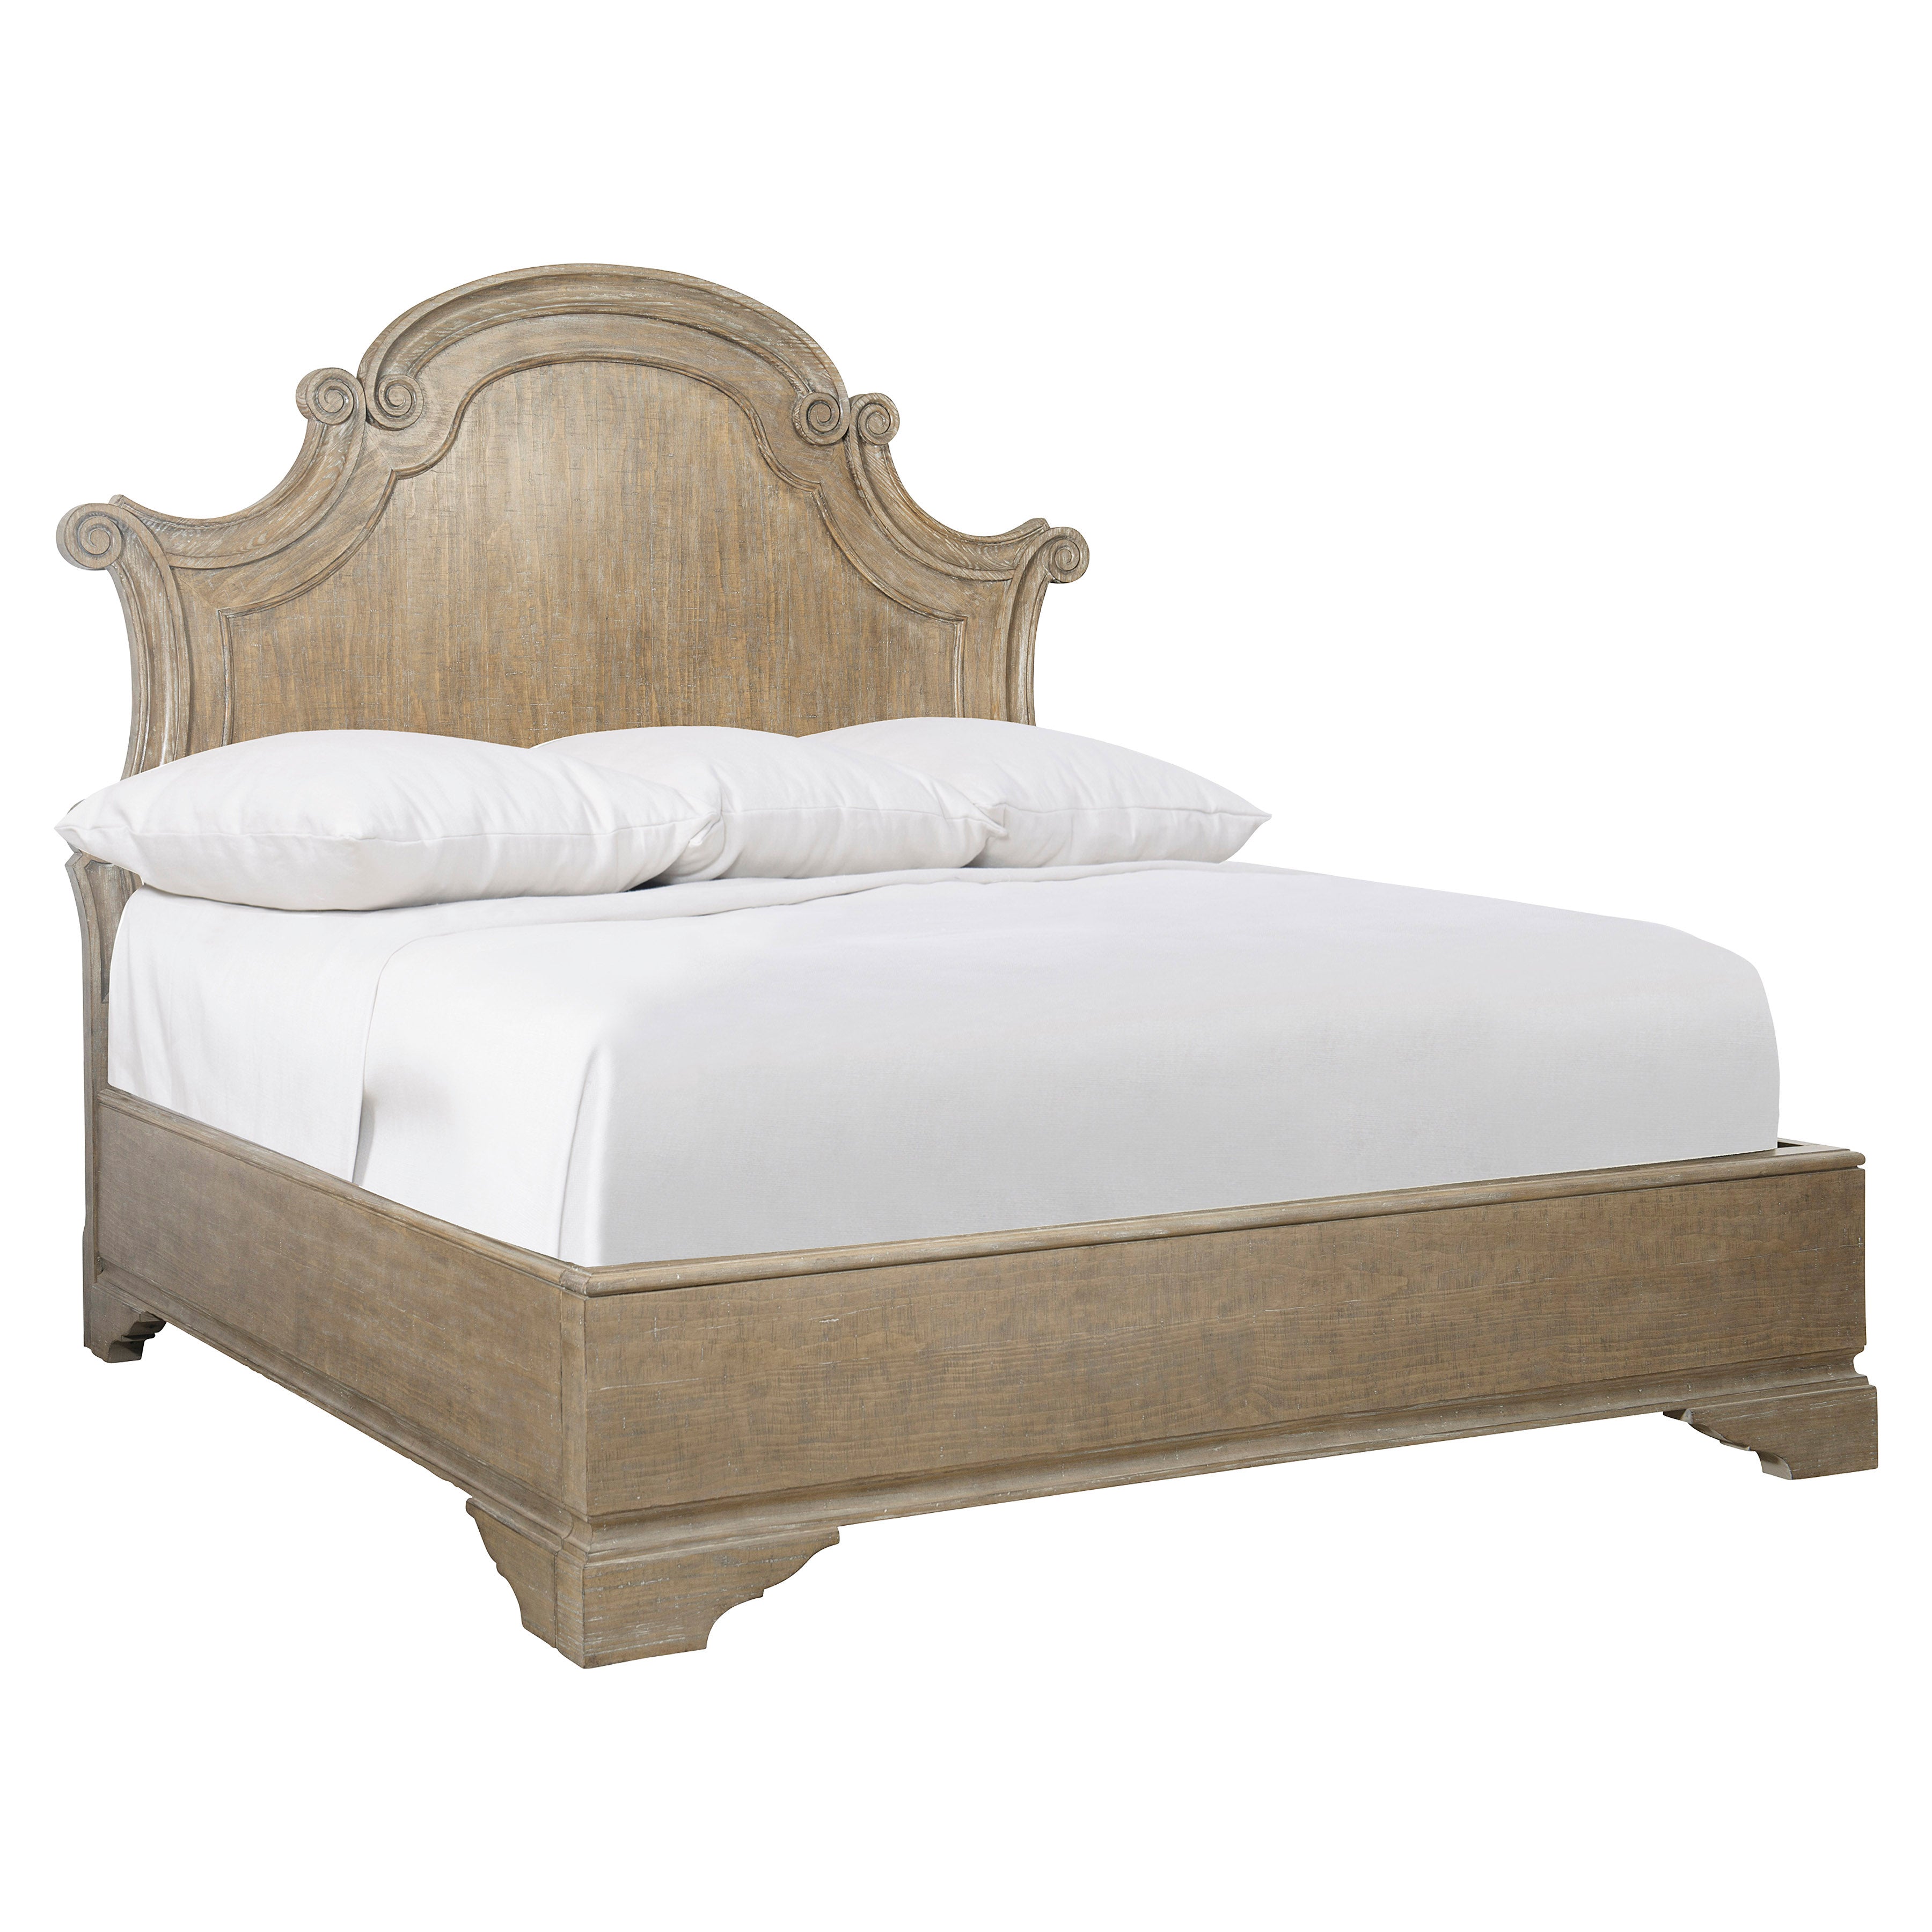 Villa Toscana Wooden Queen Panel Bed